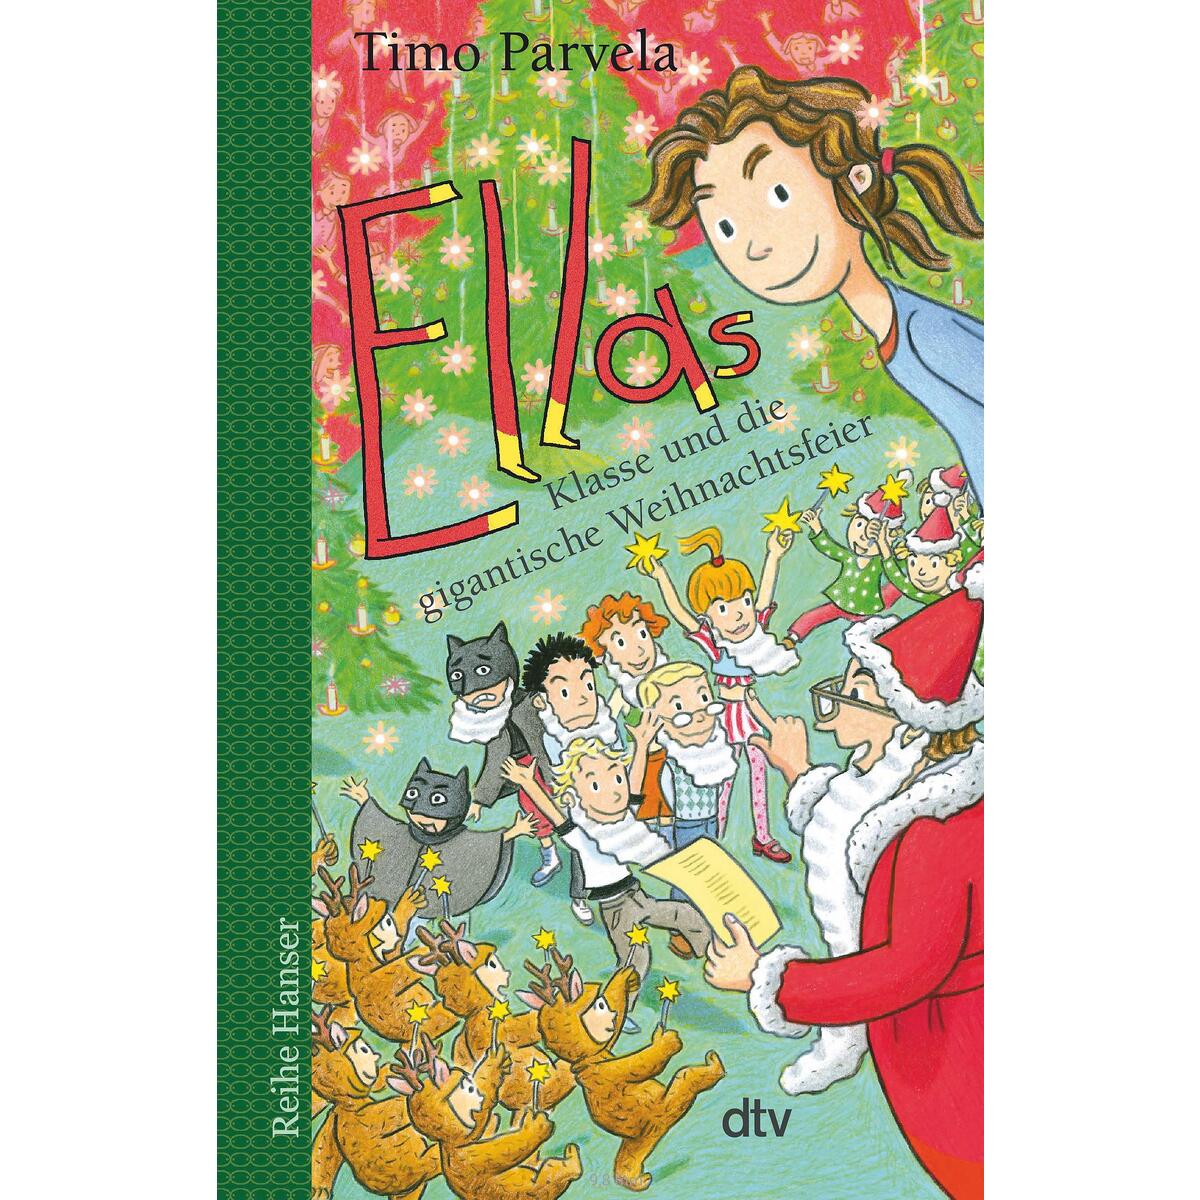 Ellas Klasse und die gigantische Weihnachtsfeier von dtv Verlagsgesellschaft